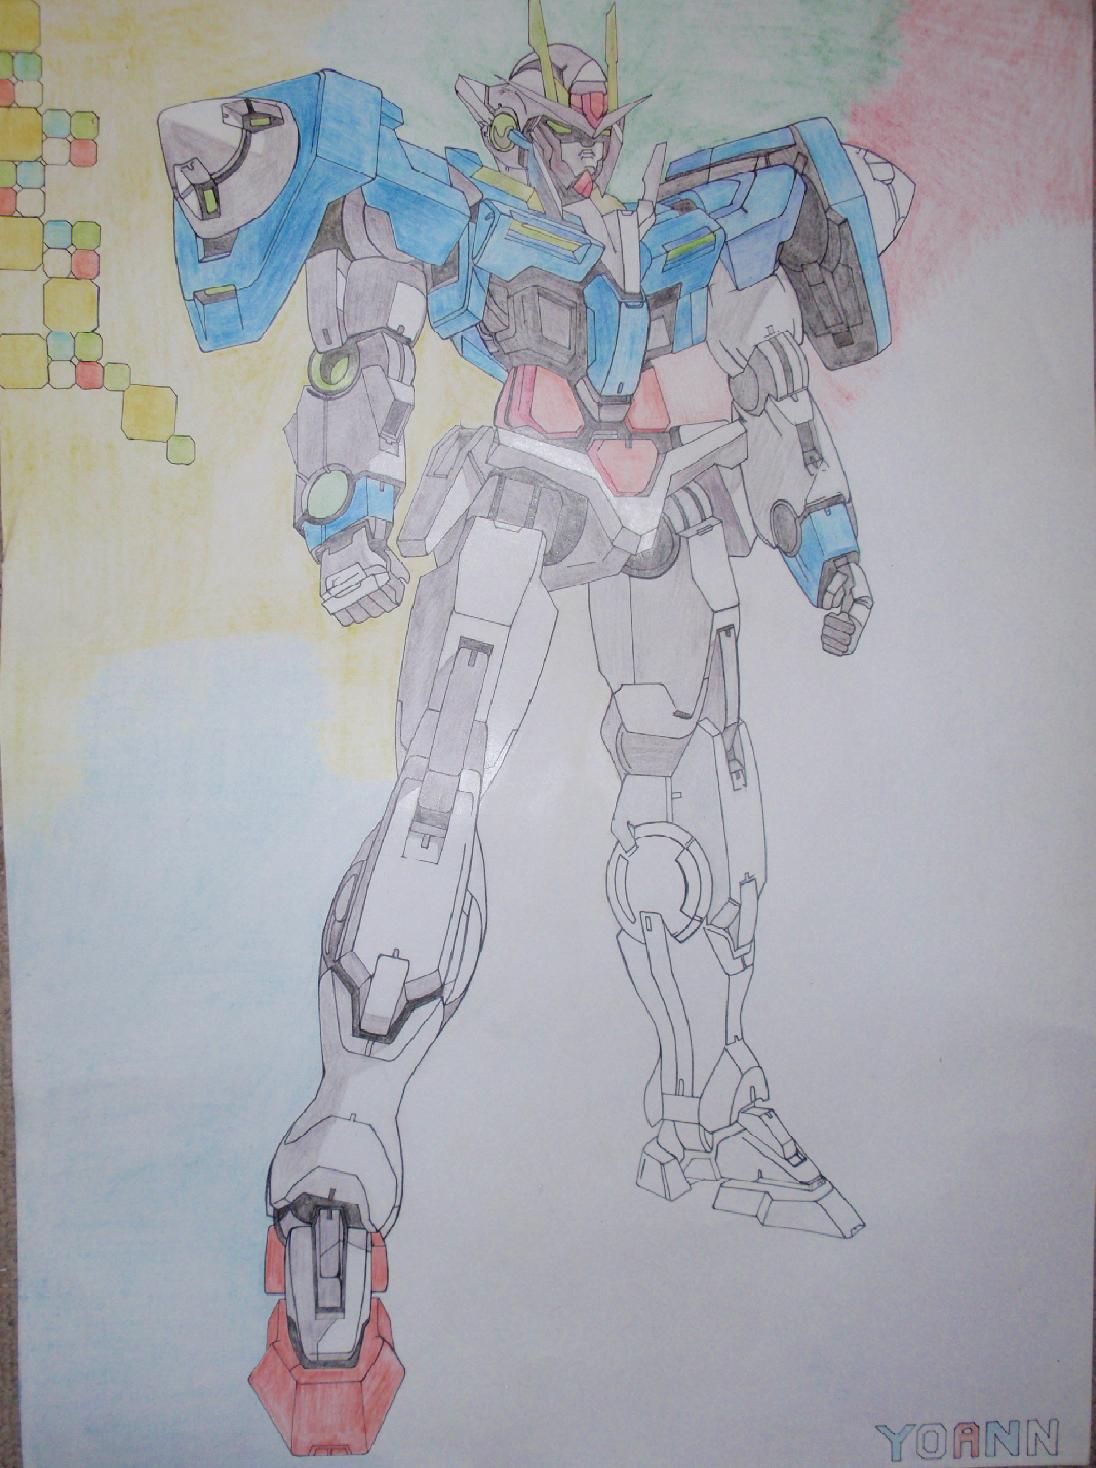 Gundam, illustration de l'anime du même nom bien connu des fans de japanimation